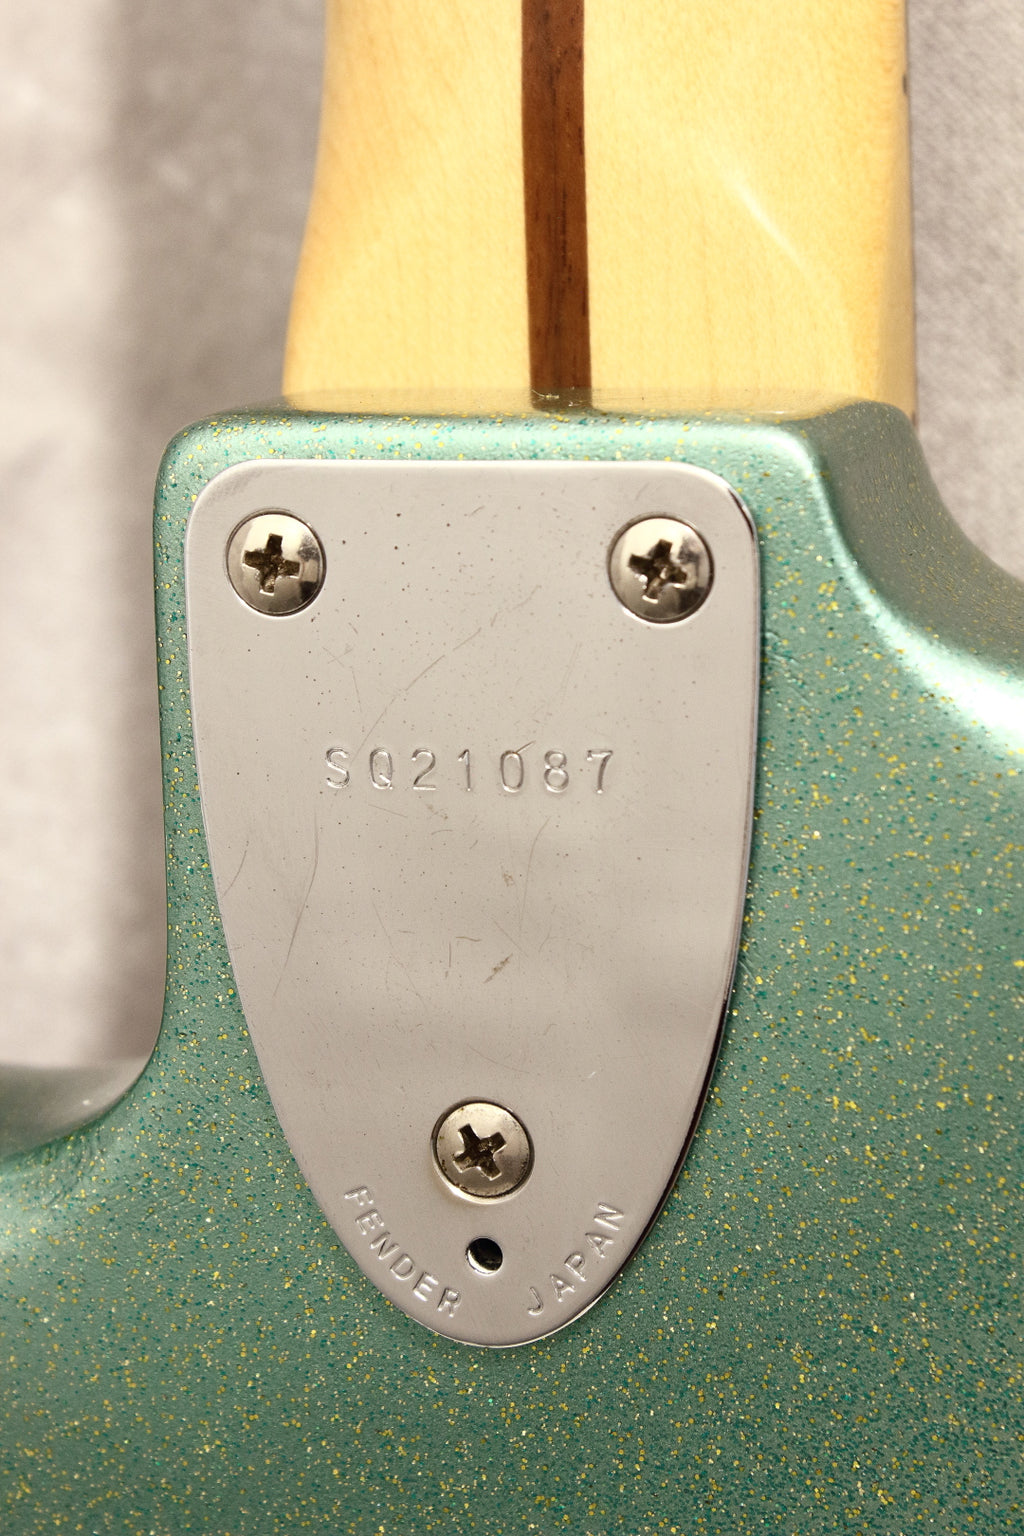 Squier Japan Stratocaster CST30 Blue Gum Sparkle SQ Serial 1984